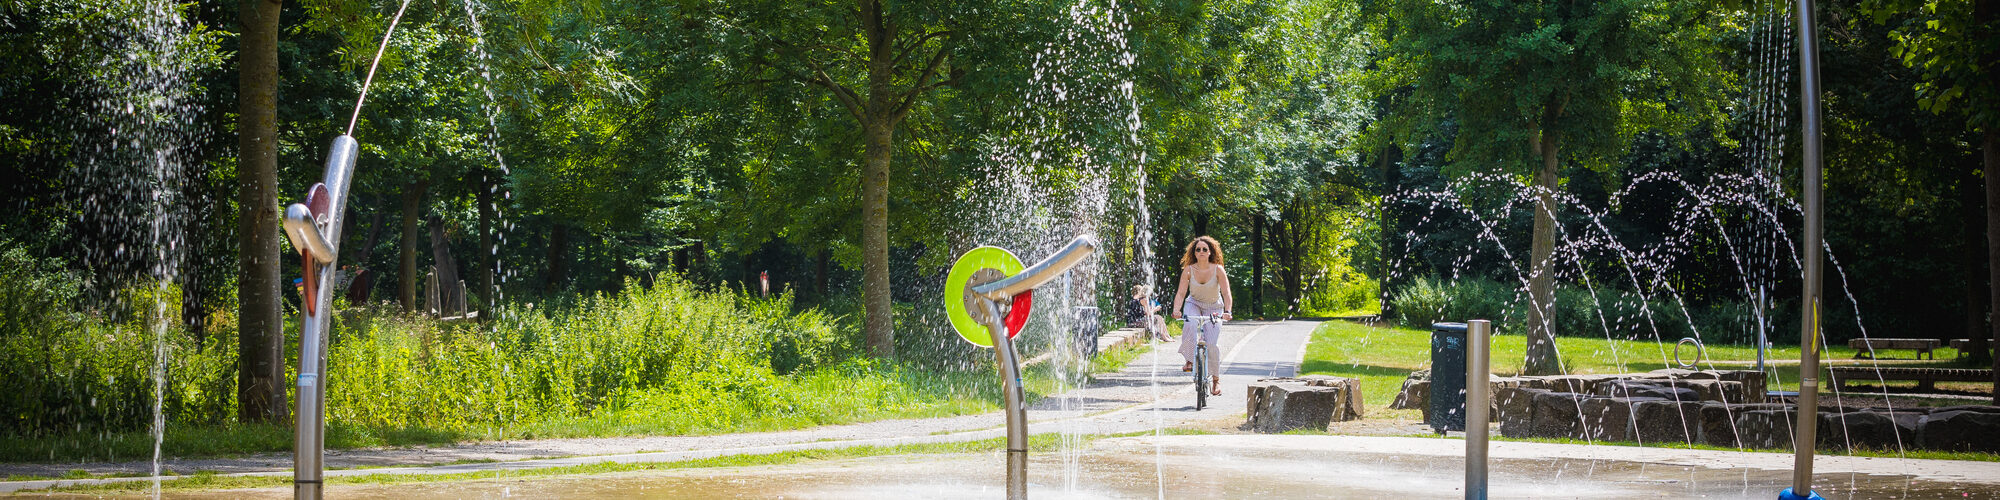 Grüne Parklandschaft, vorne ein Wasserspielplatz mit mehreren Rohren und Wasserfiguren. Von hinten kommt eine Frau mit dem Fahrrad zentral ins Bild